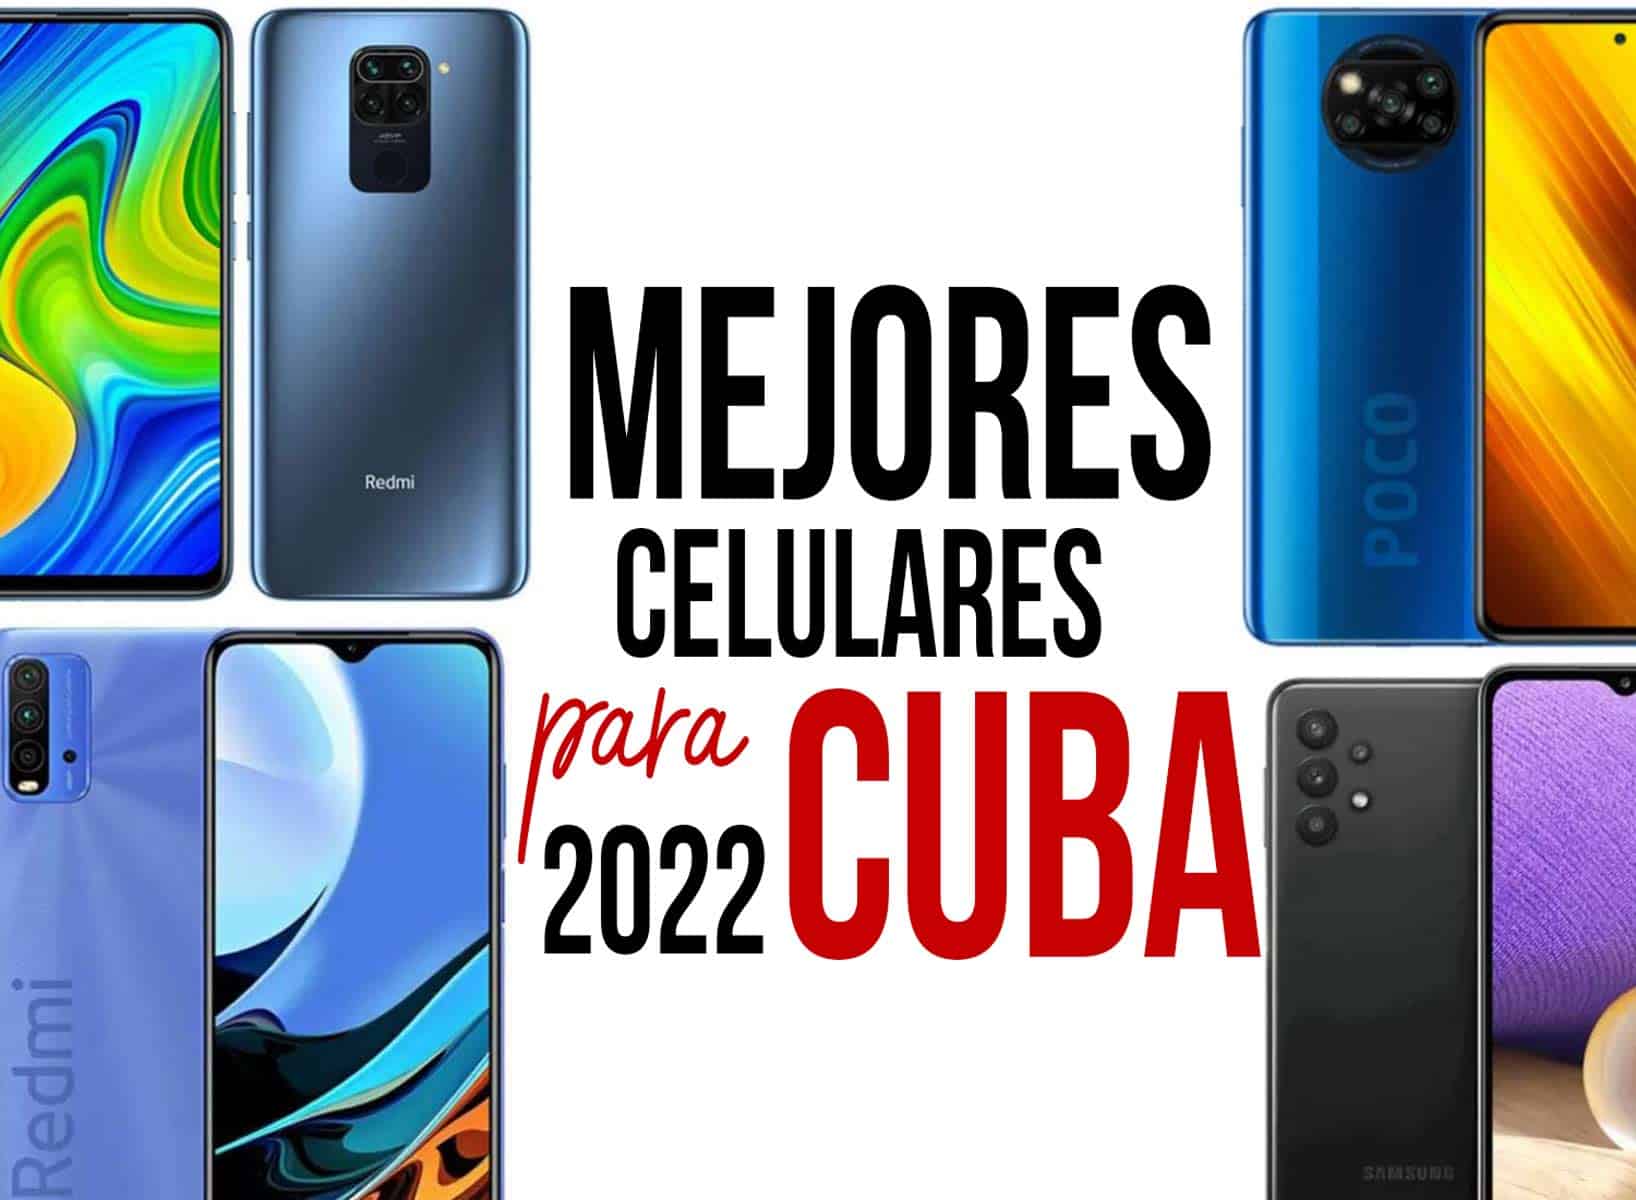 telefonos celulares para cuba 2022